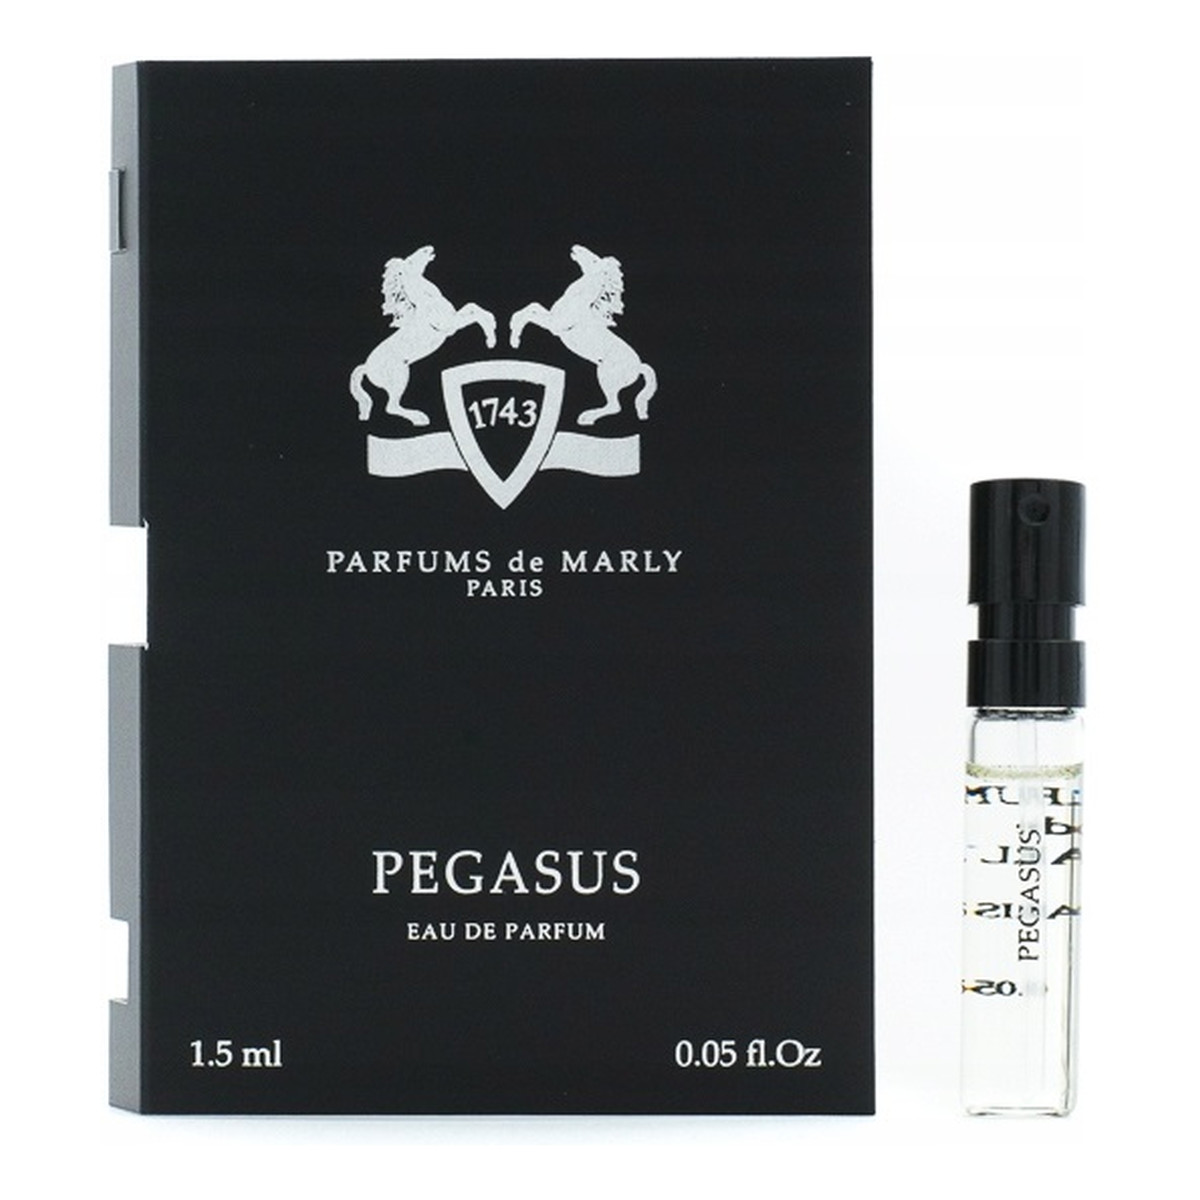 Parfums de Marly Pegasus Woda perfumowana spray próbka 1.5ml